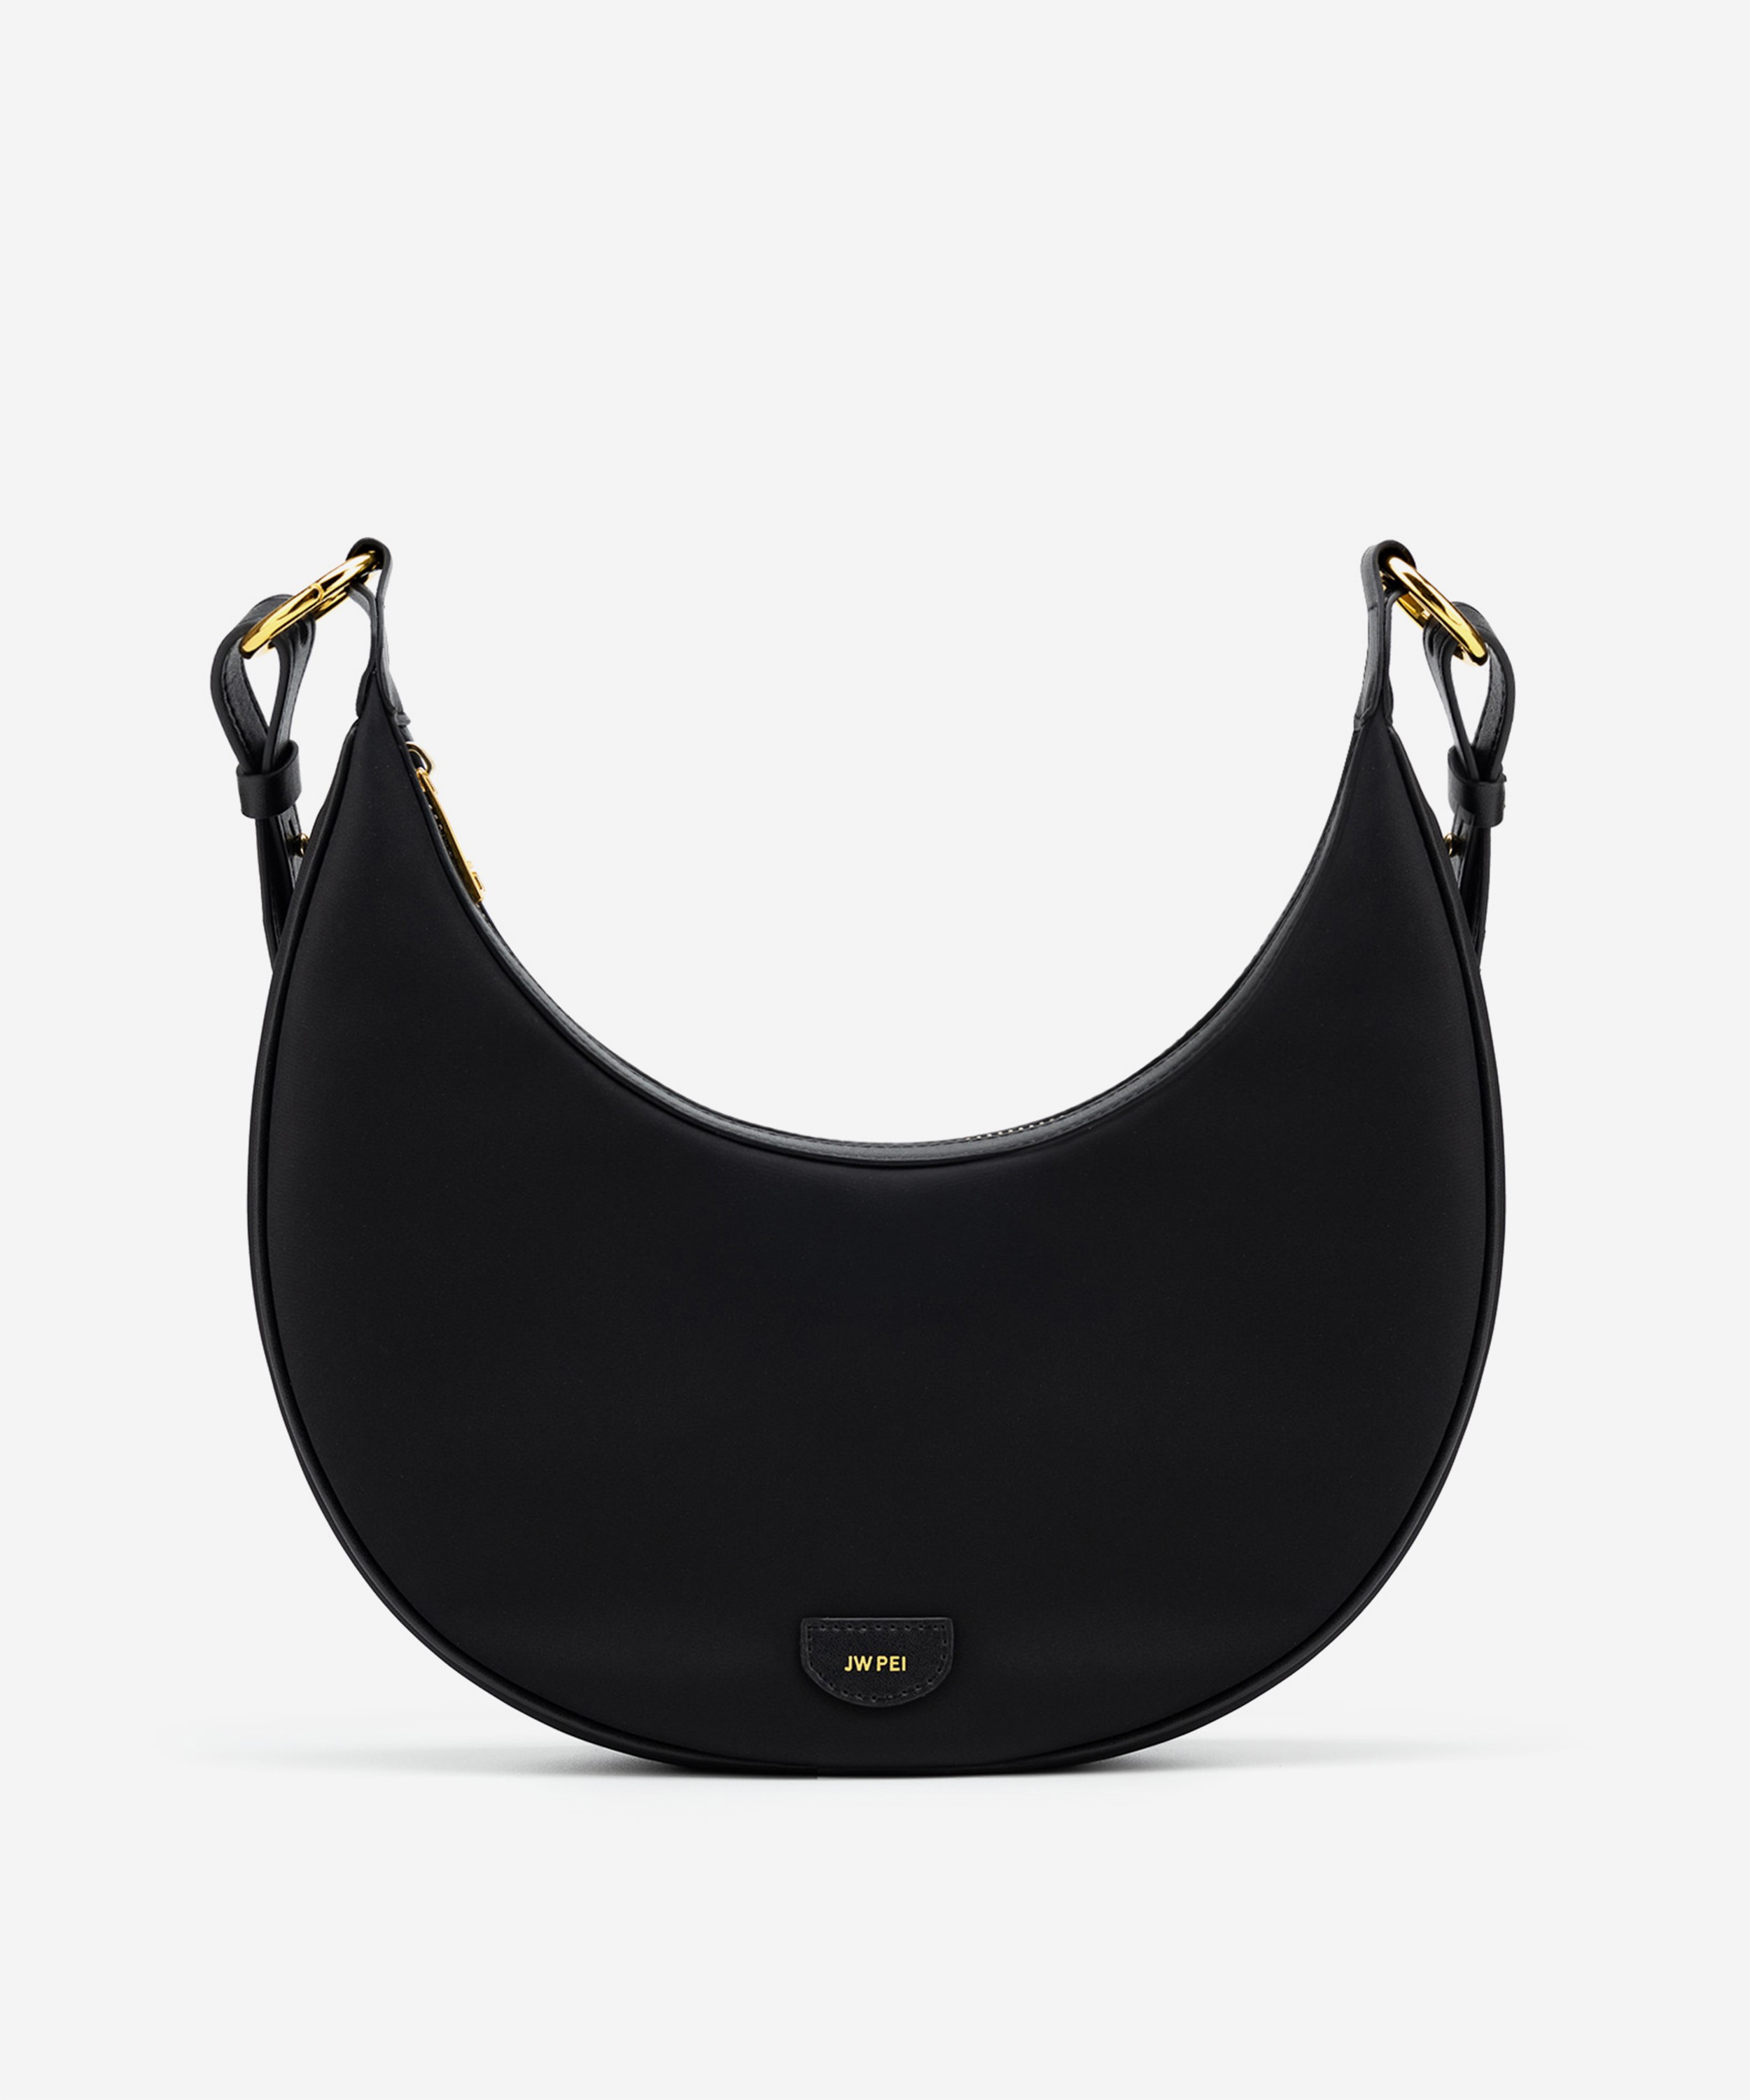 JW Pei Women's Clutch Bags - Black